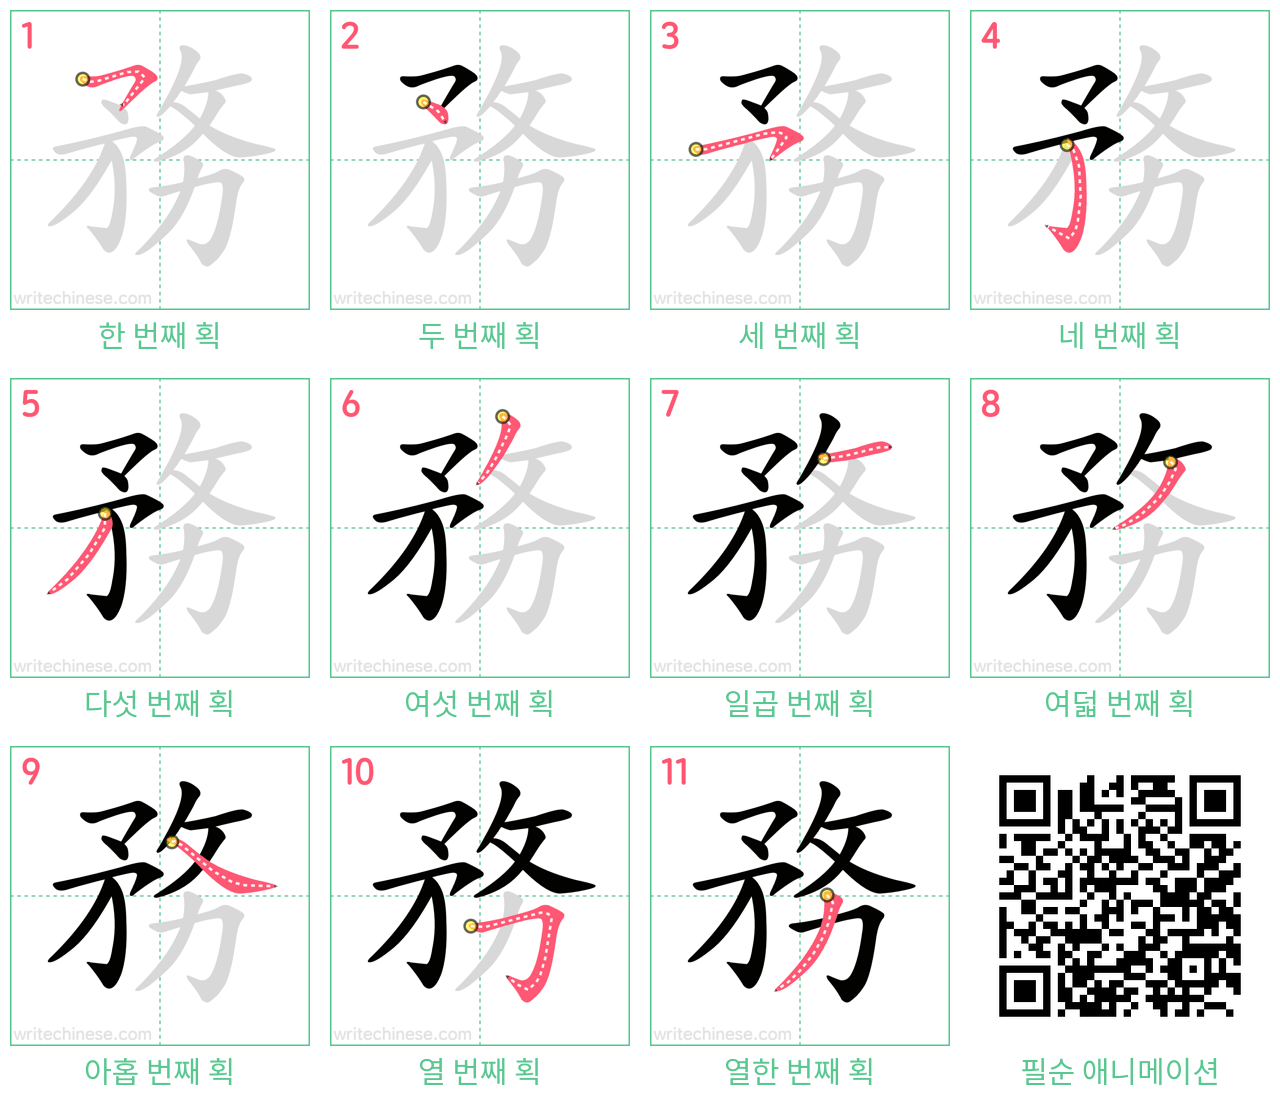 務 step-by-step stroke order diagrams